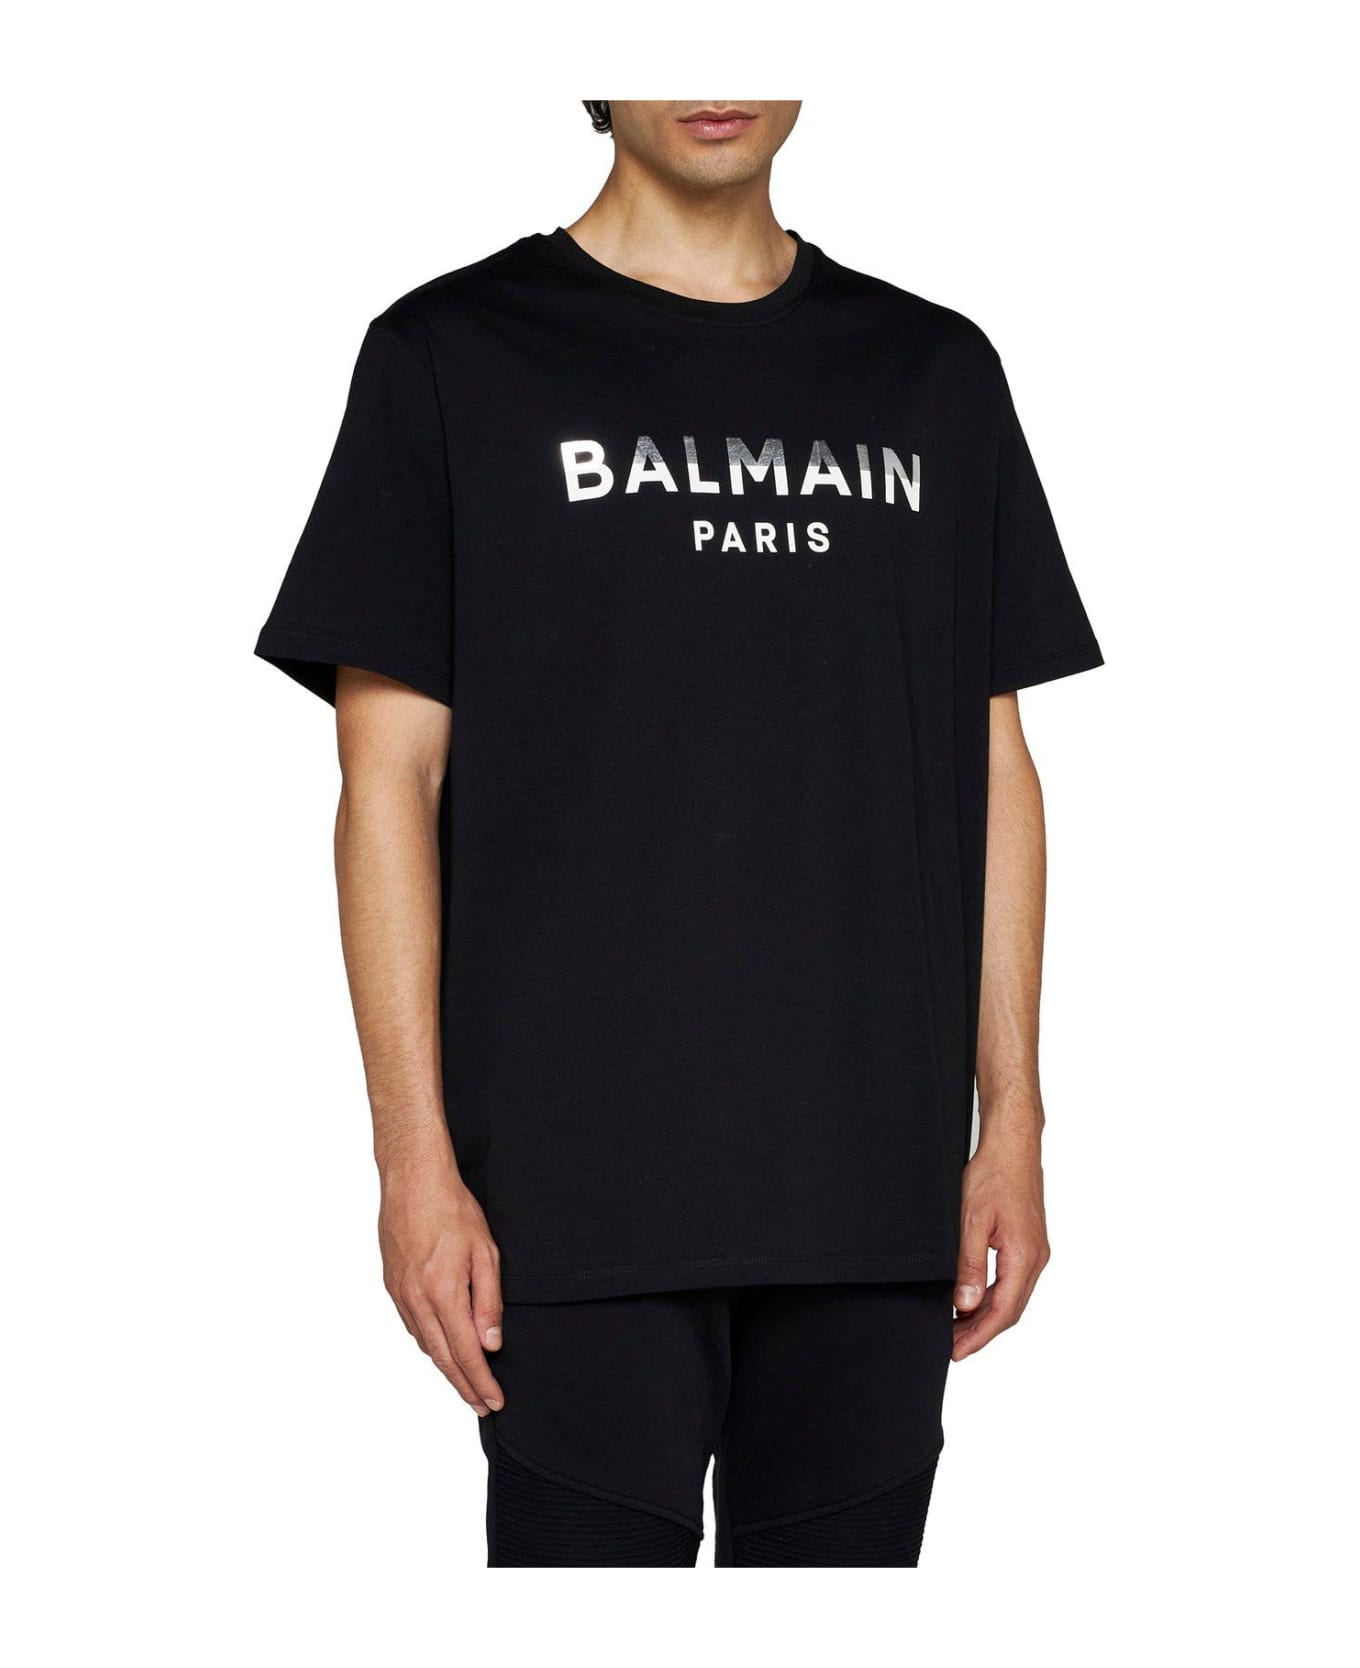 Balmain Logo Printed Crewneck T-shirt - Noir/argent